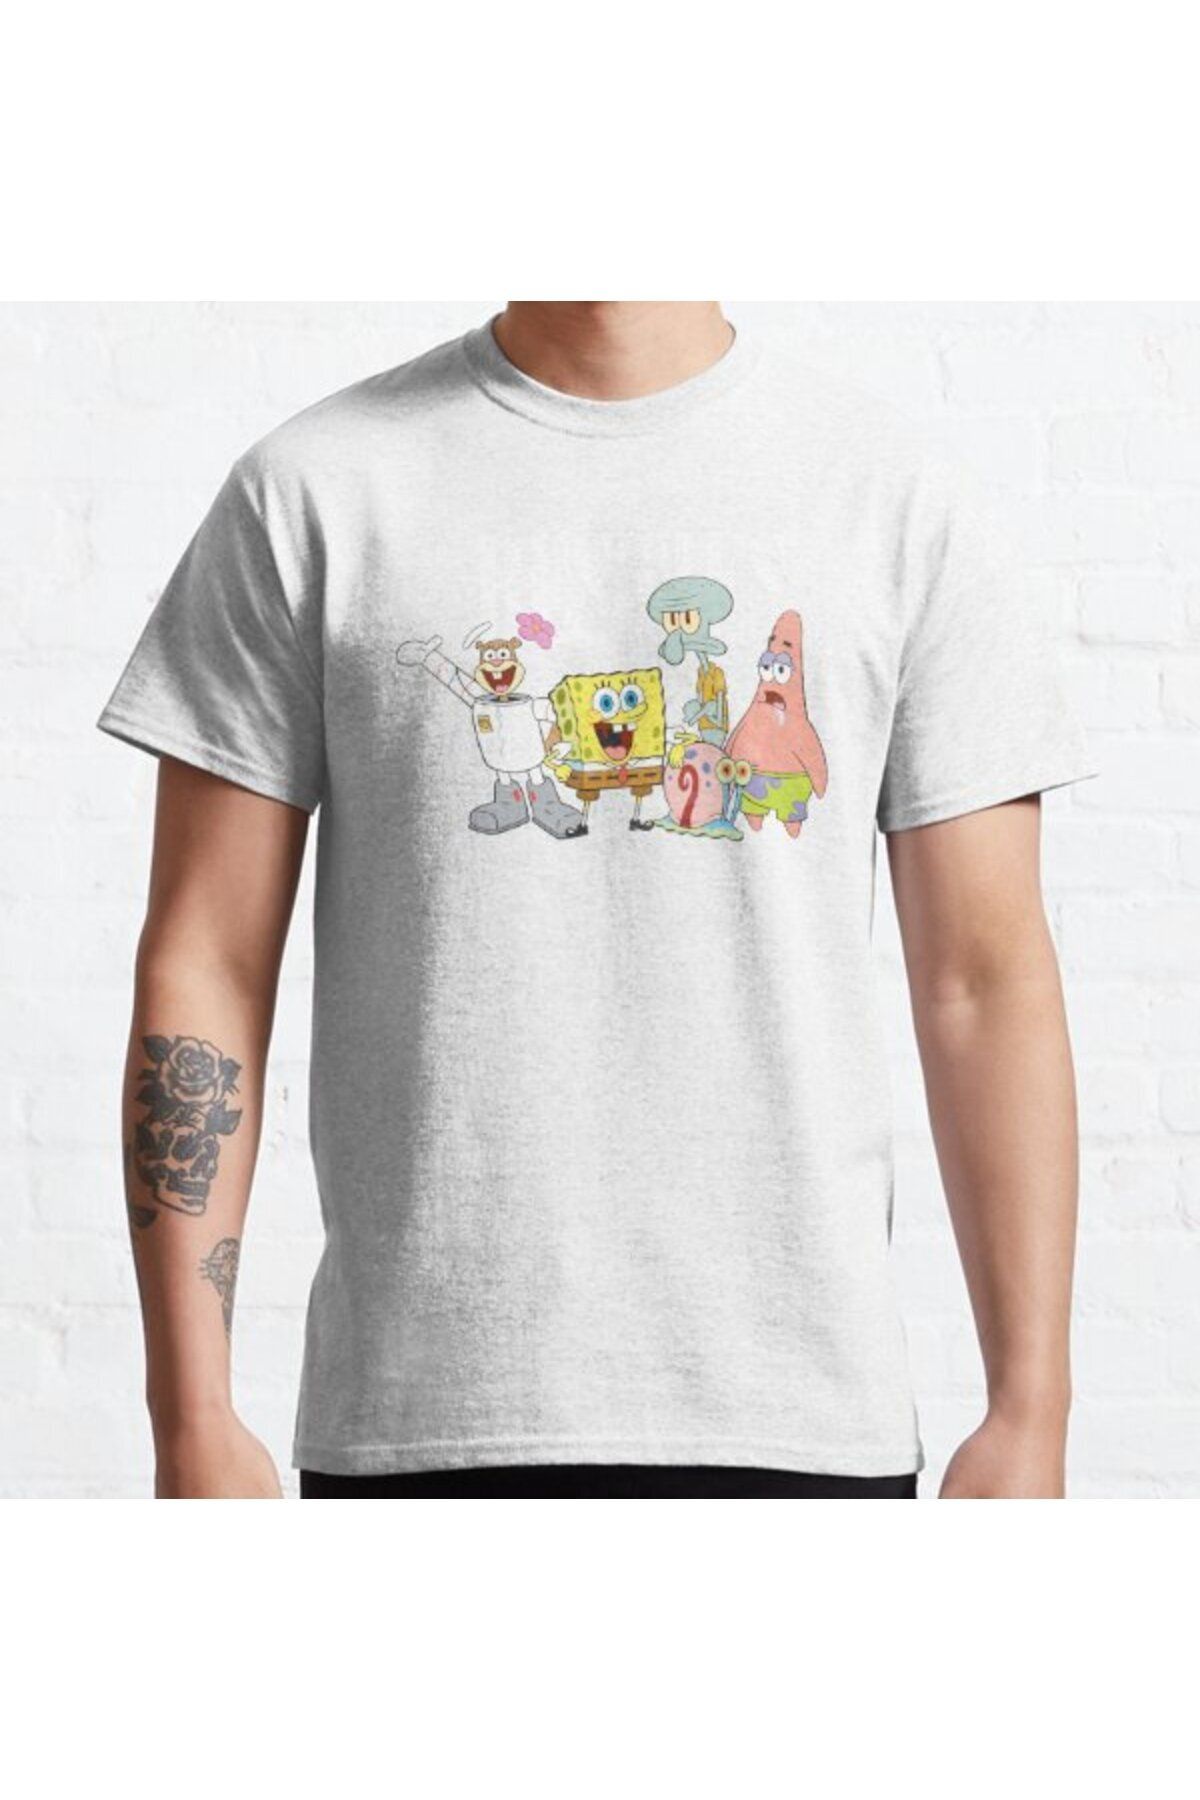 ZOKAWEAR Bol Kalıp Unisex Spongebob Squarepants Bikini Bottom Group Besties Tasarım Baskılı Tshirt